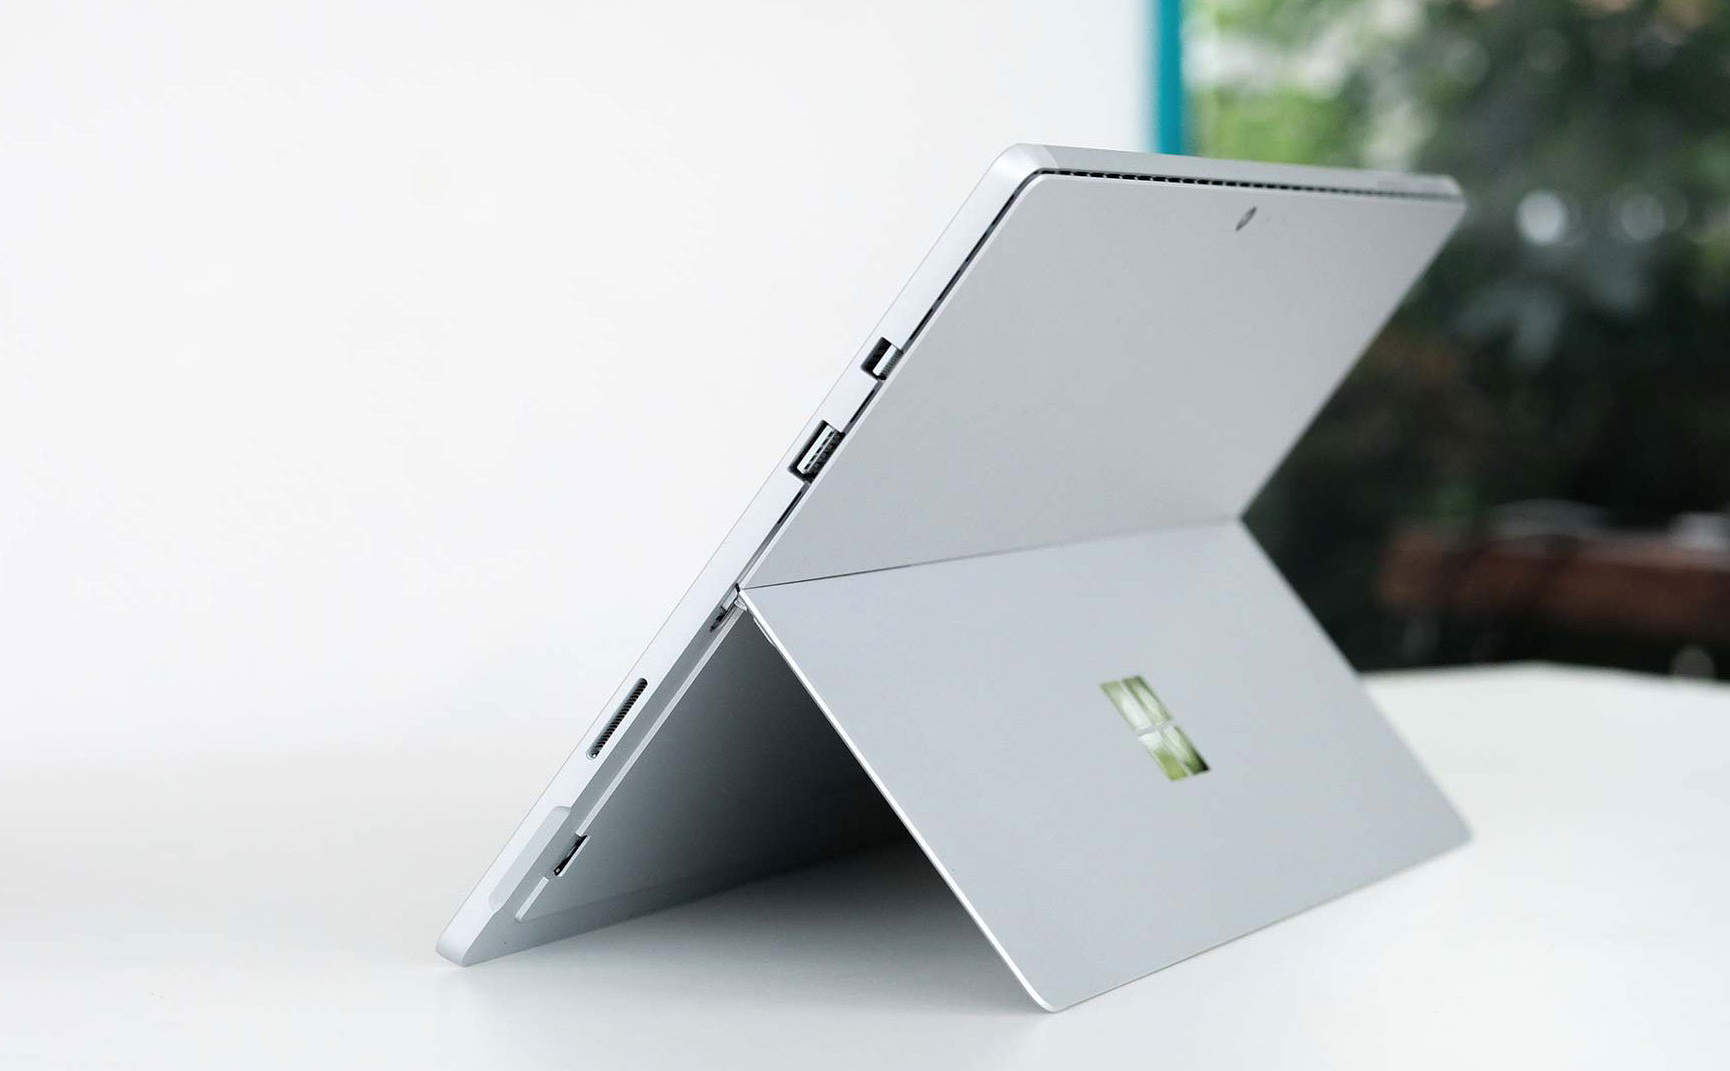 Consumer Reports khôi phục danh hiệu "nên mua" cho Microsoft Surface